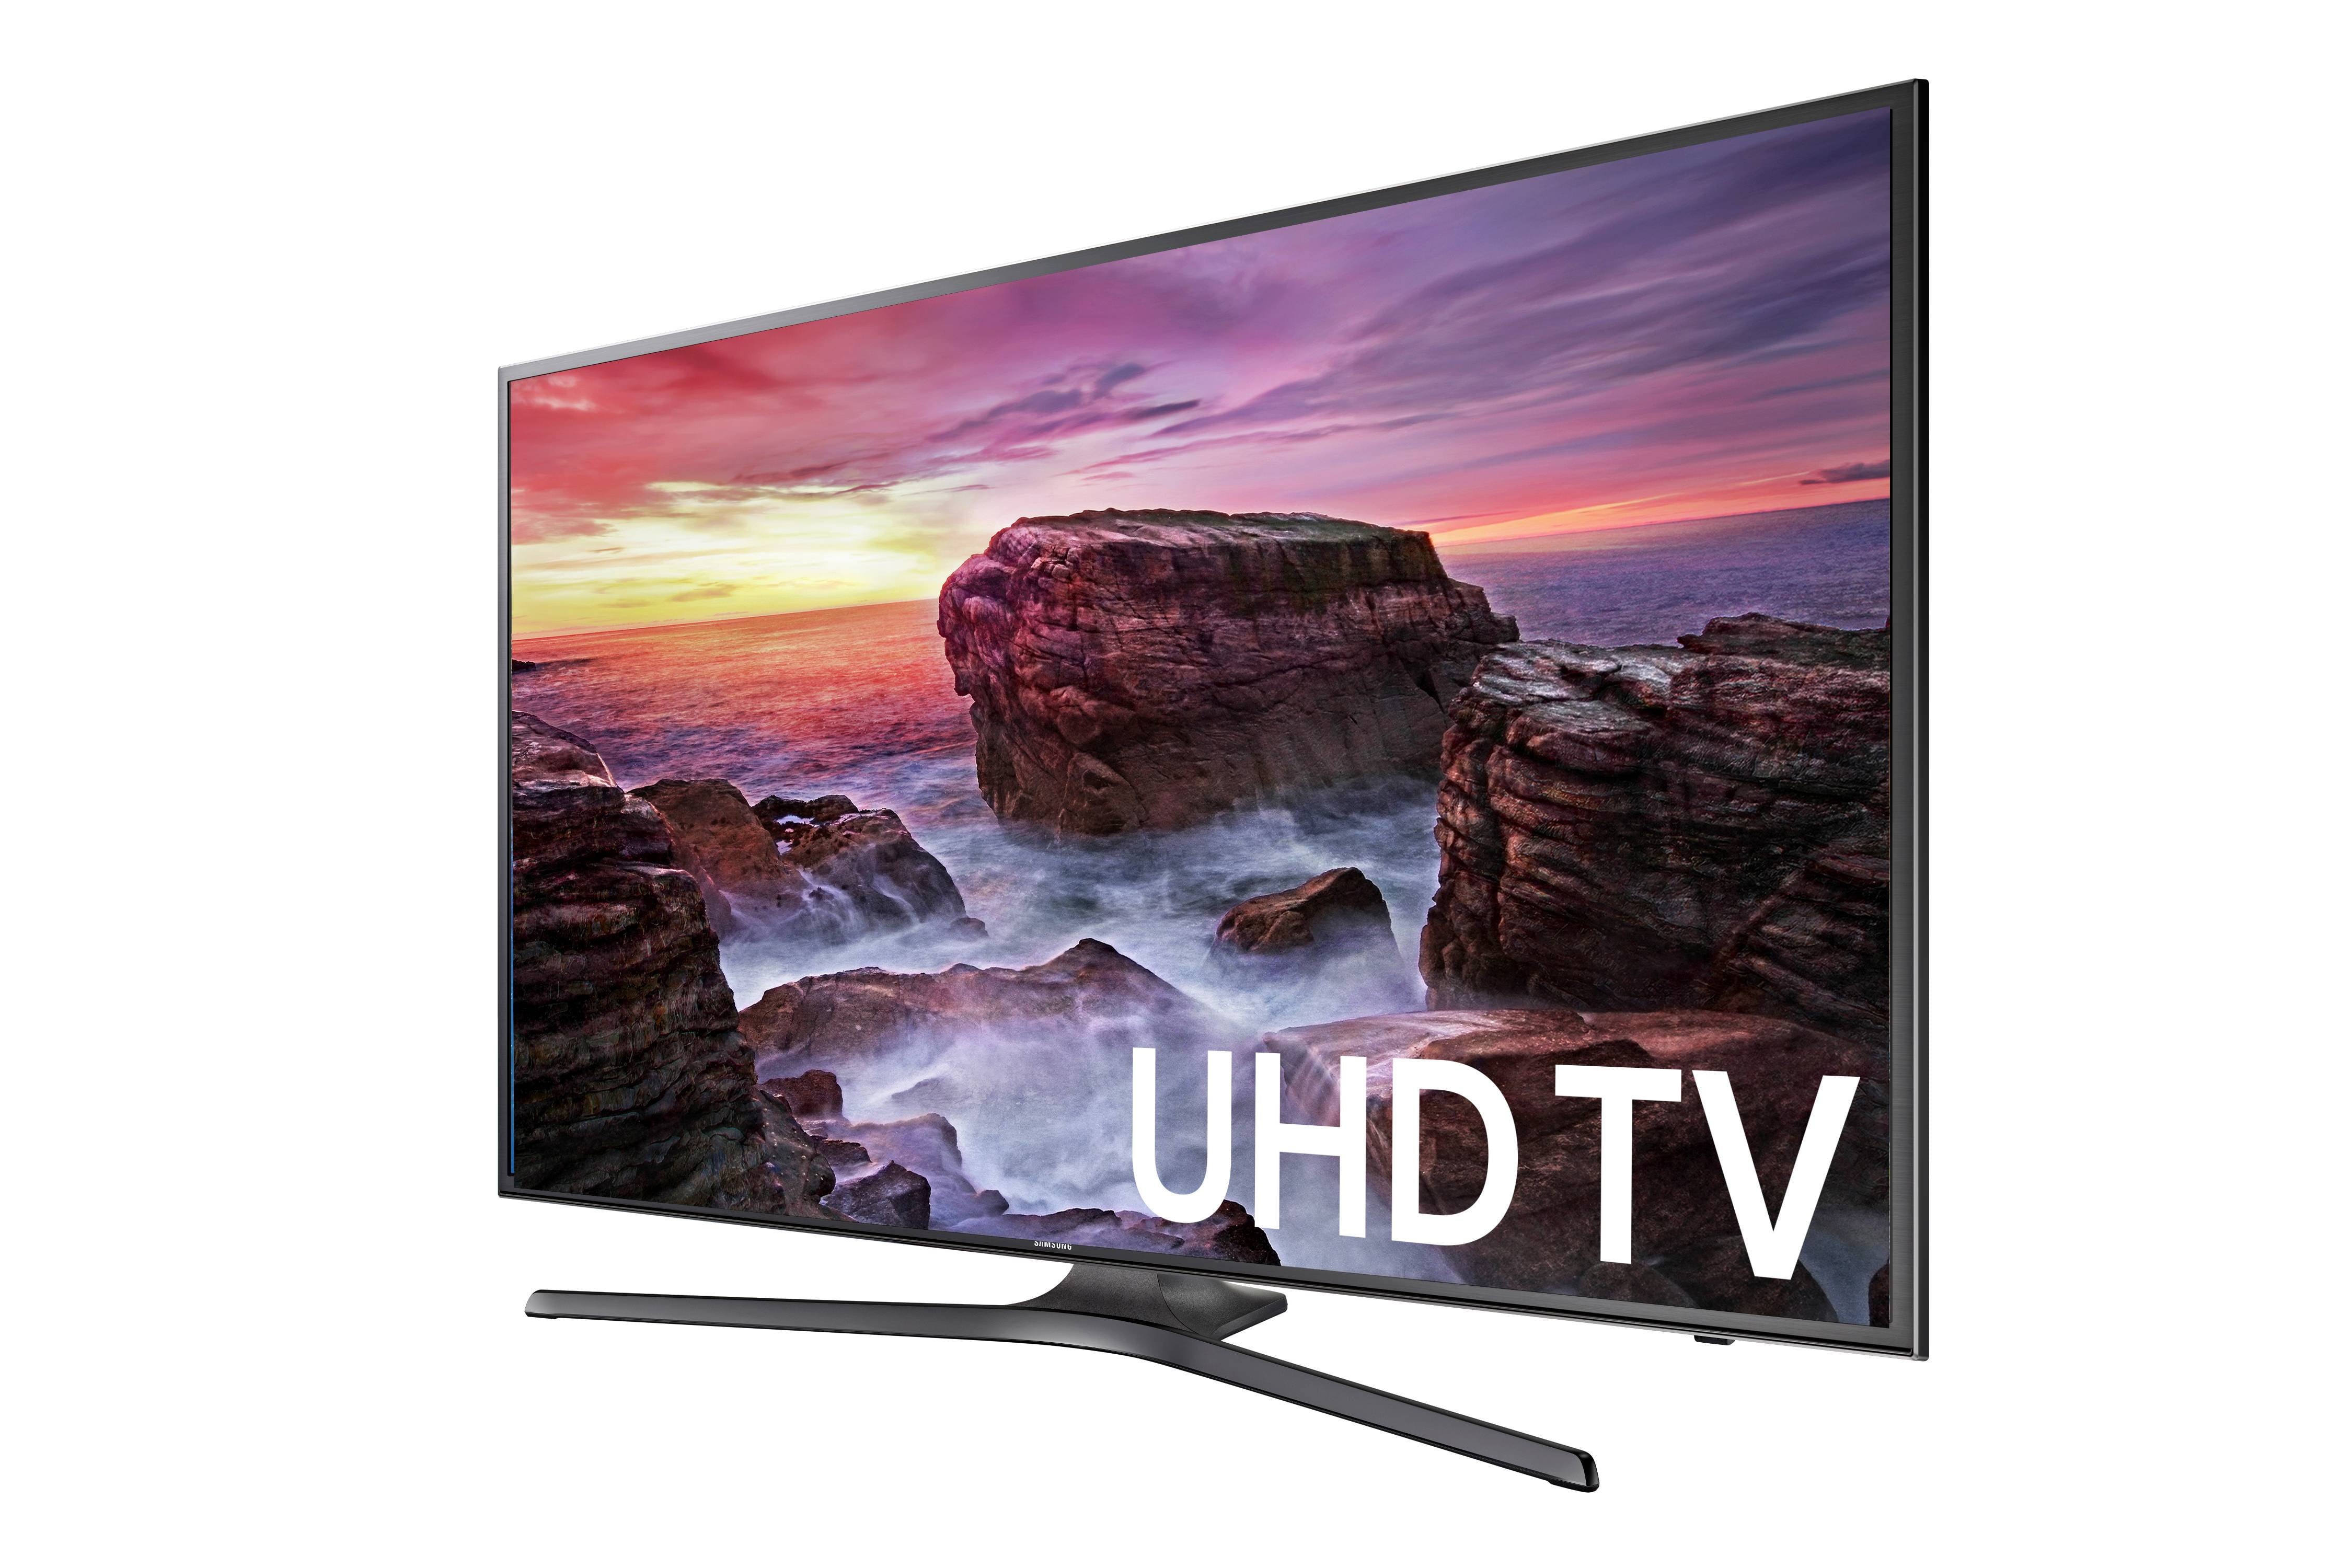 Аналоговый телевизор самсунг. Samsung 6 Series 50 Smart TV. Телевизор самсунг 58 дюймов. Samsung Smart TV 55.